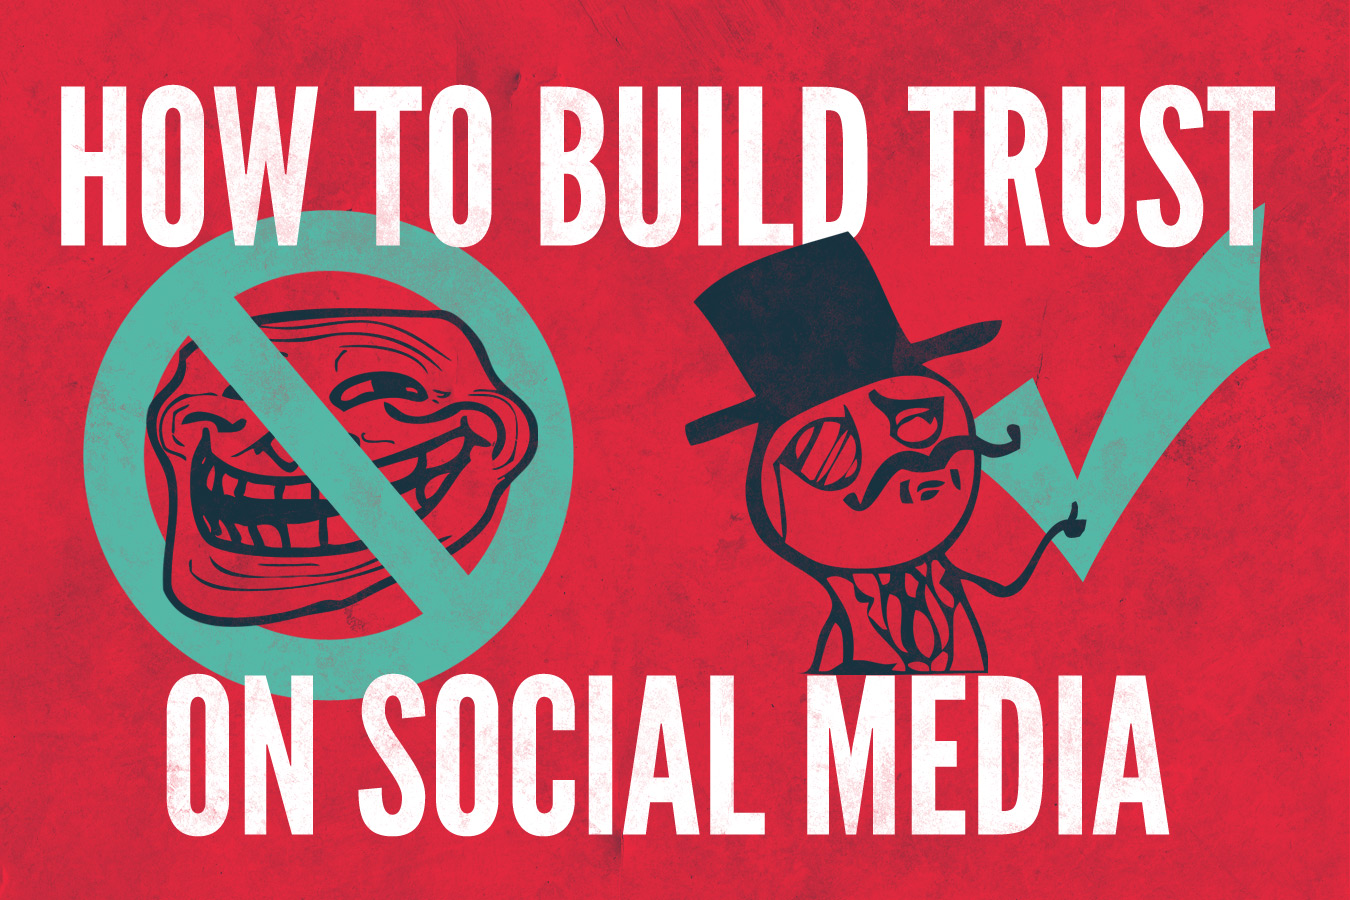 Building trust on social media